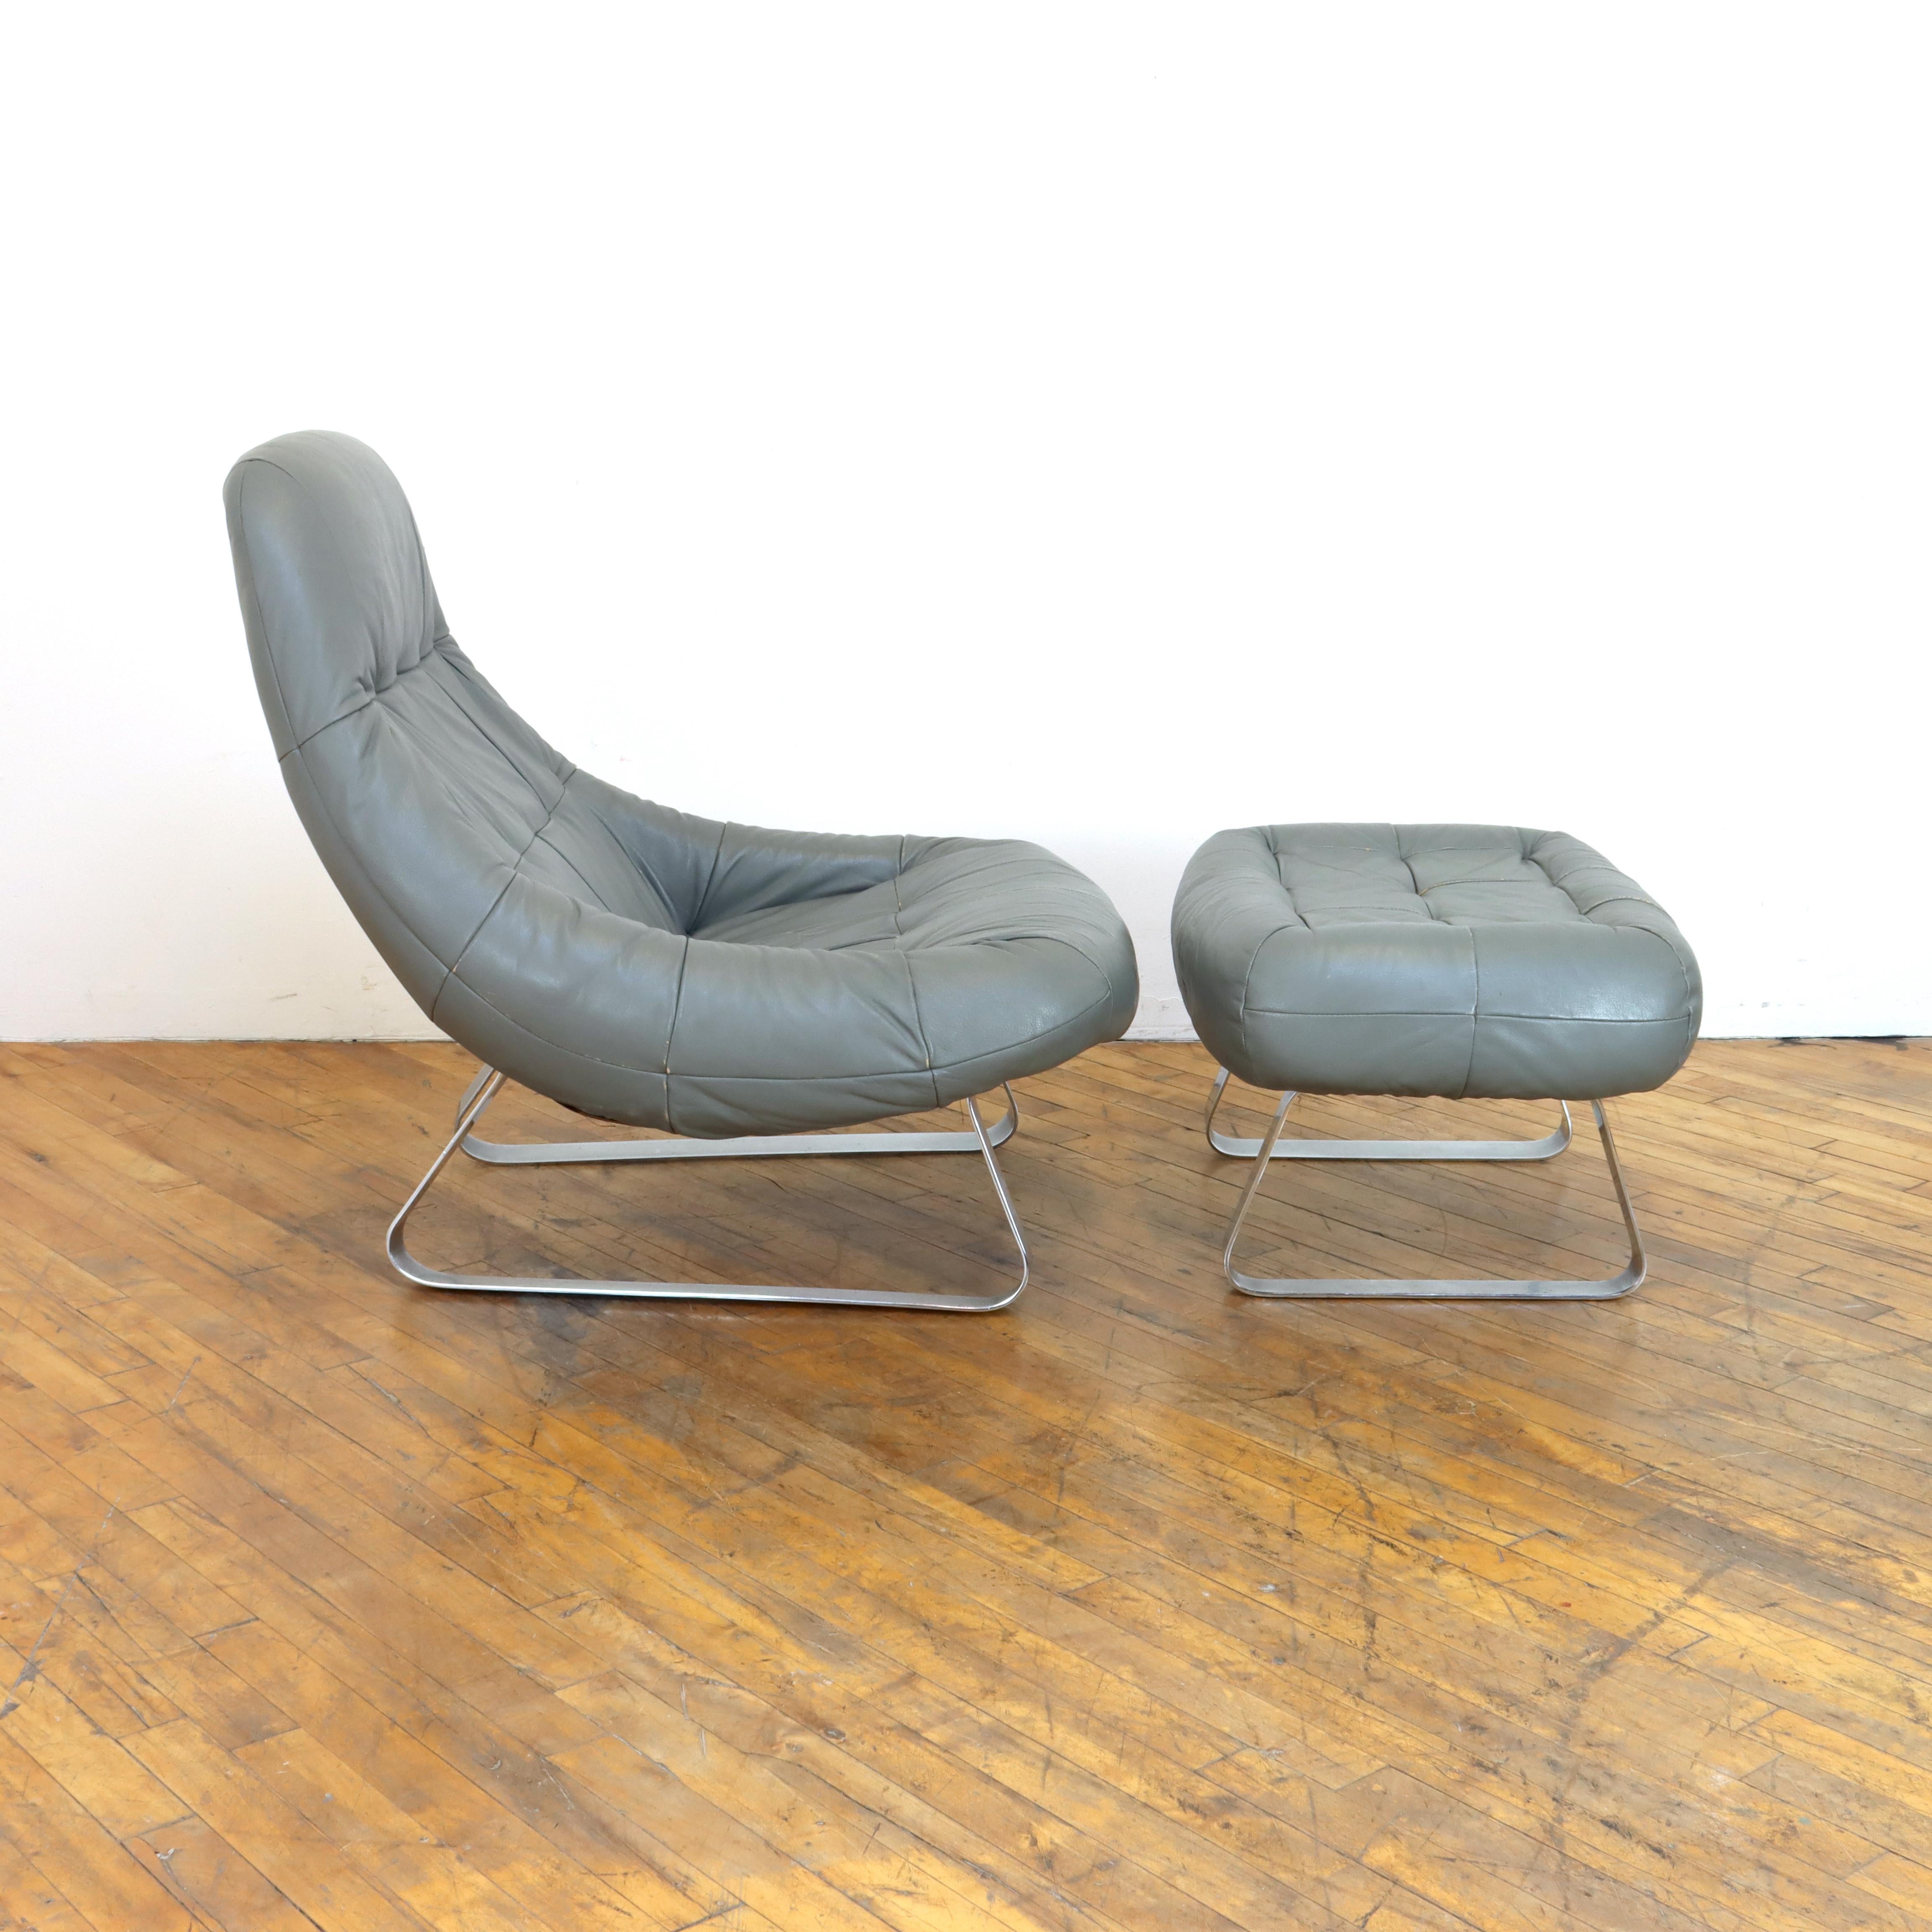 Lehnen Sie sich in diesem Raumschiff von einem Stuhl zurück.  Futuristischer Hippie-Sessel und Ottomane aus den 1970er Jahren, entworfen vom brasilianischen Designer Percival Lafer.  Lafer ist einer der anerkanntesten brasilianischen Designer seiner